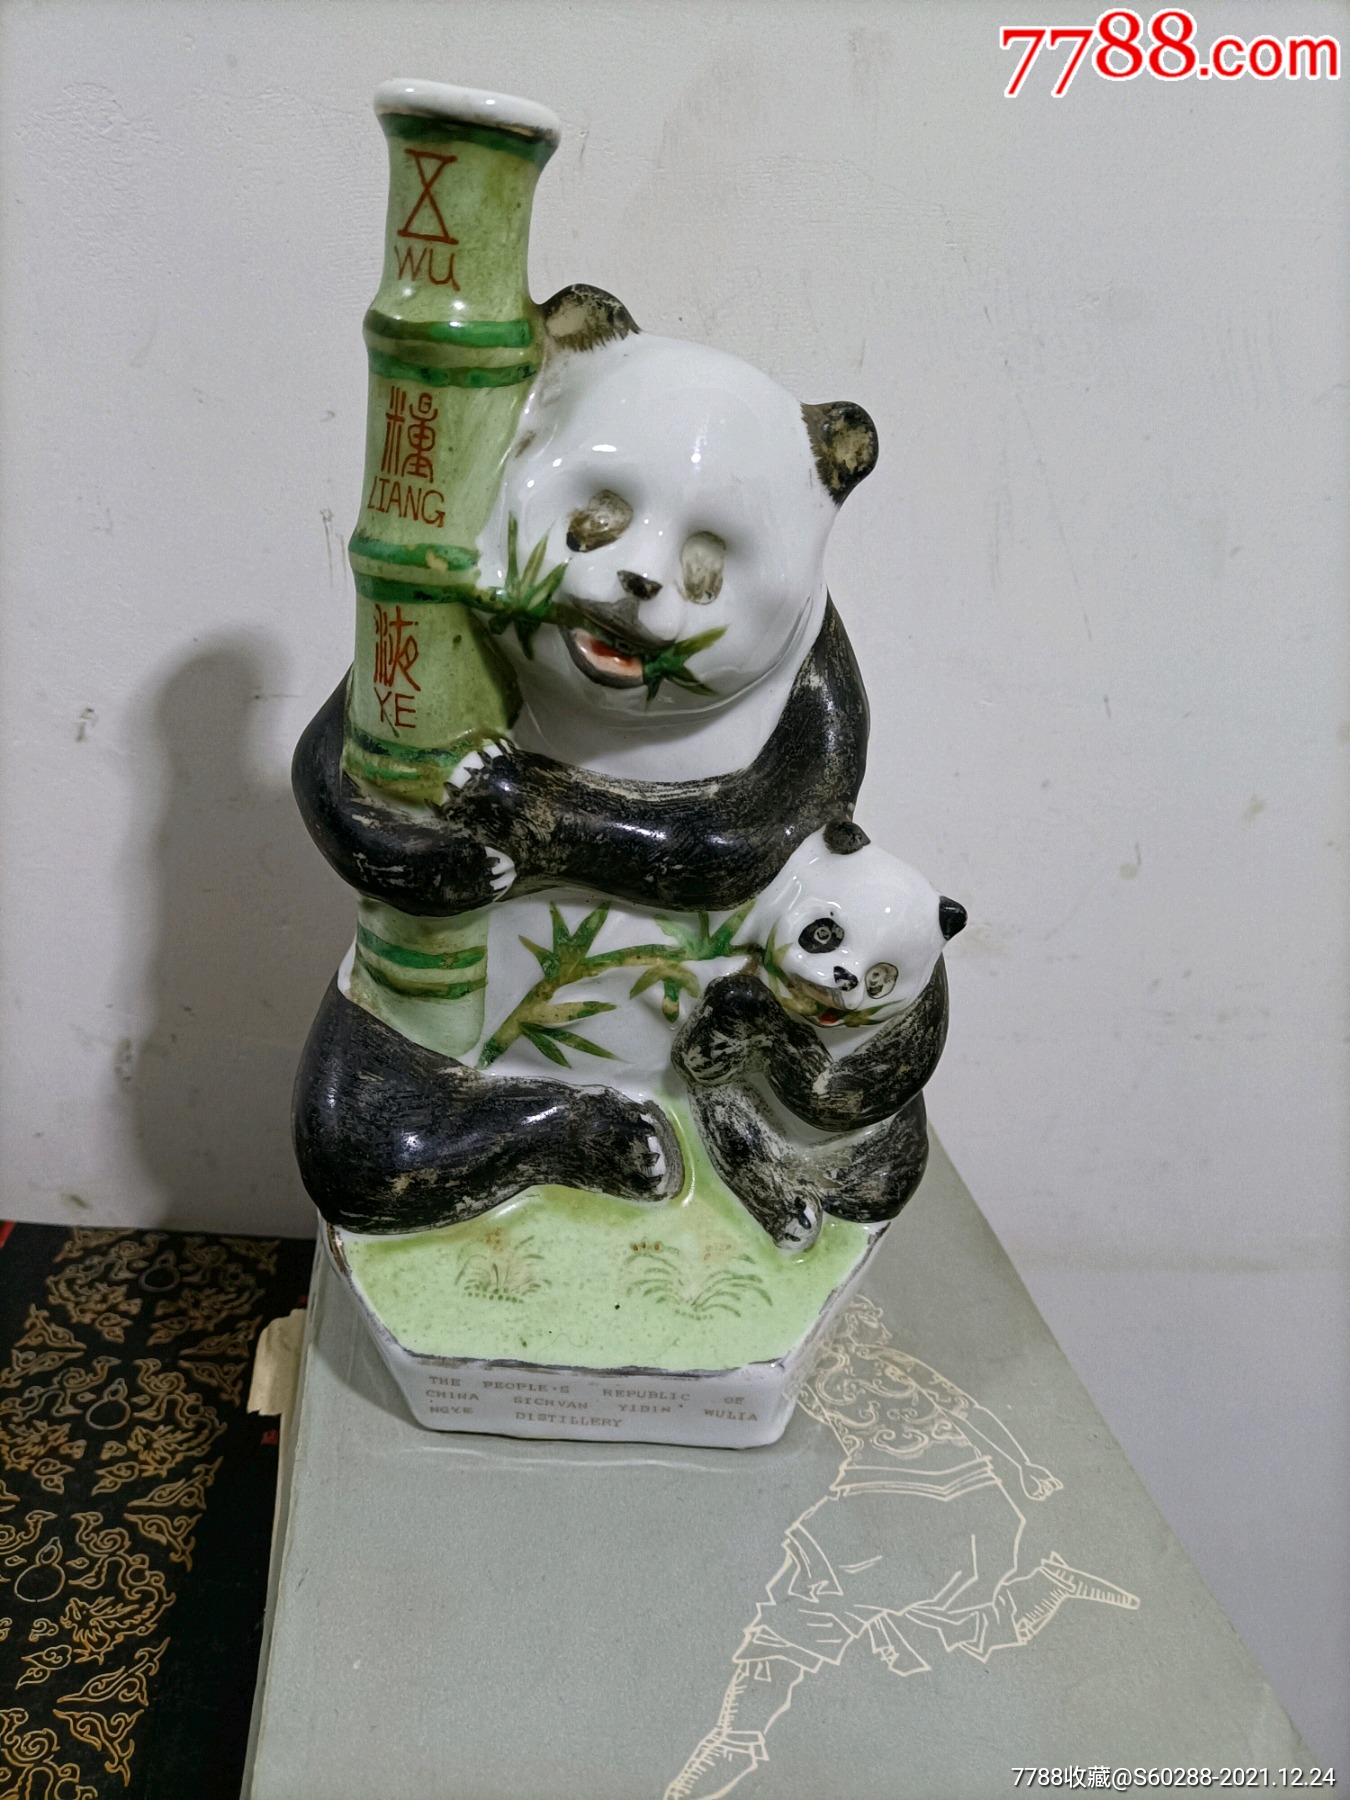 熊猫五粮液纪念版图片